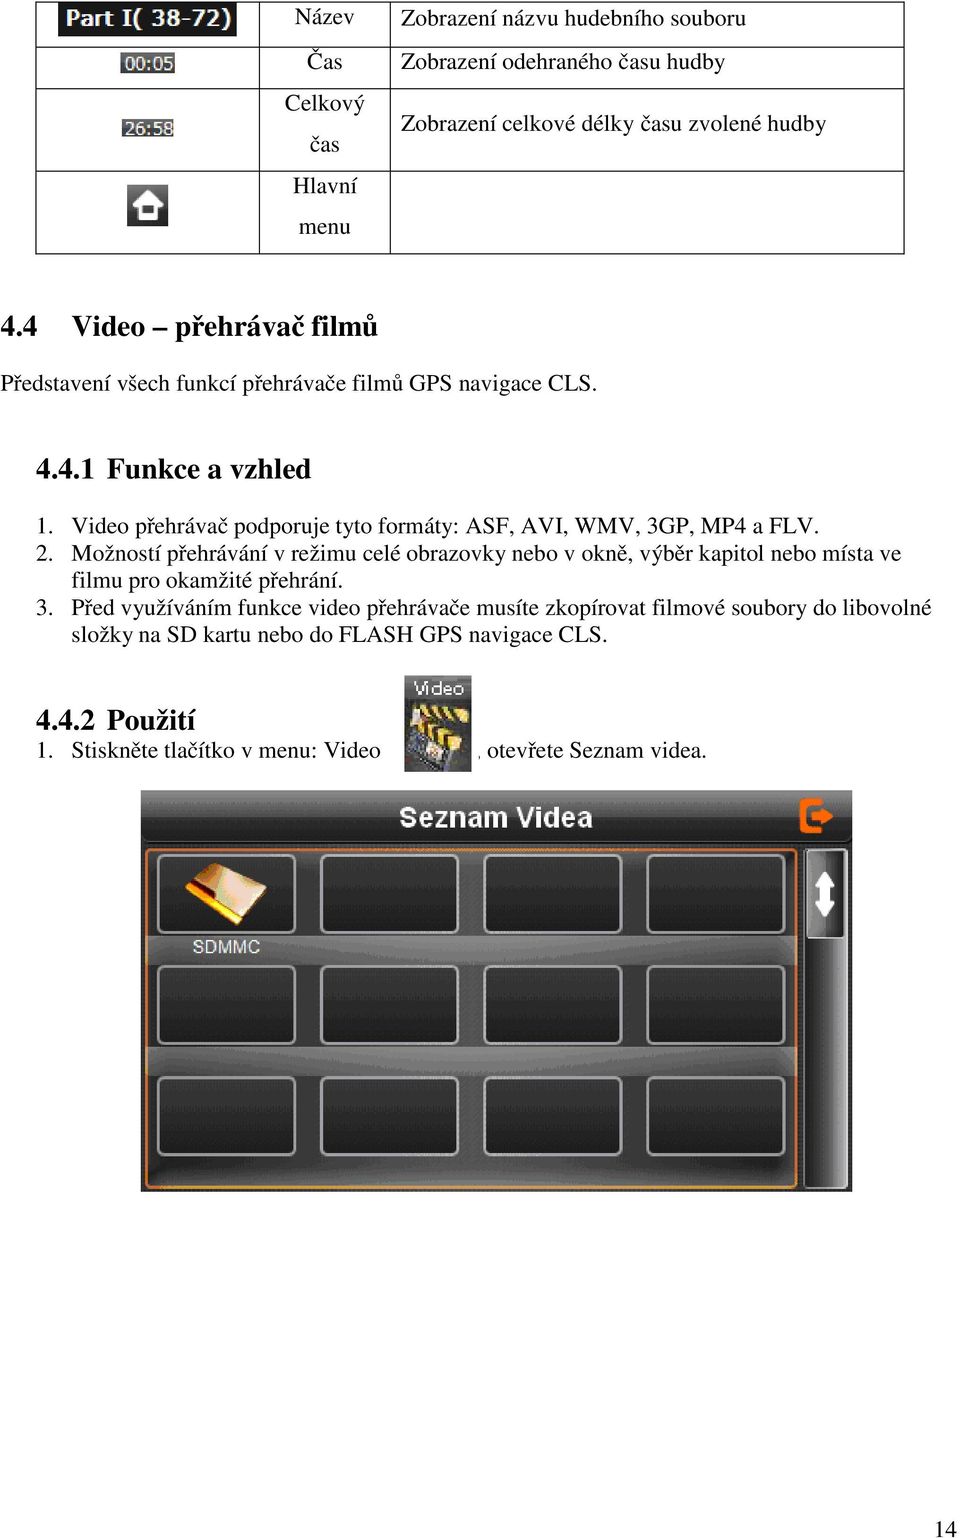 Video přehrávač podporuje tyto formáty: ASF, AVI, WMV, 3GP, MP4 a FLV. 2.